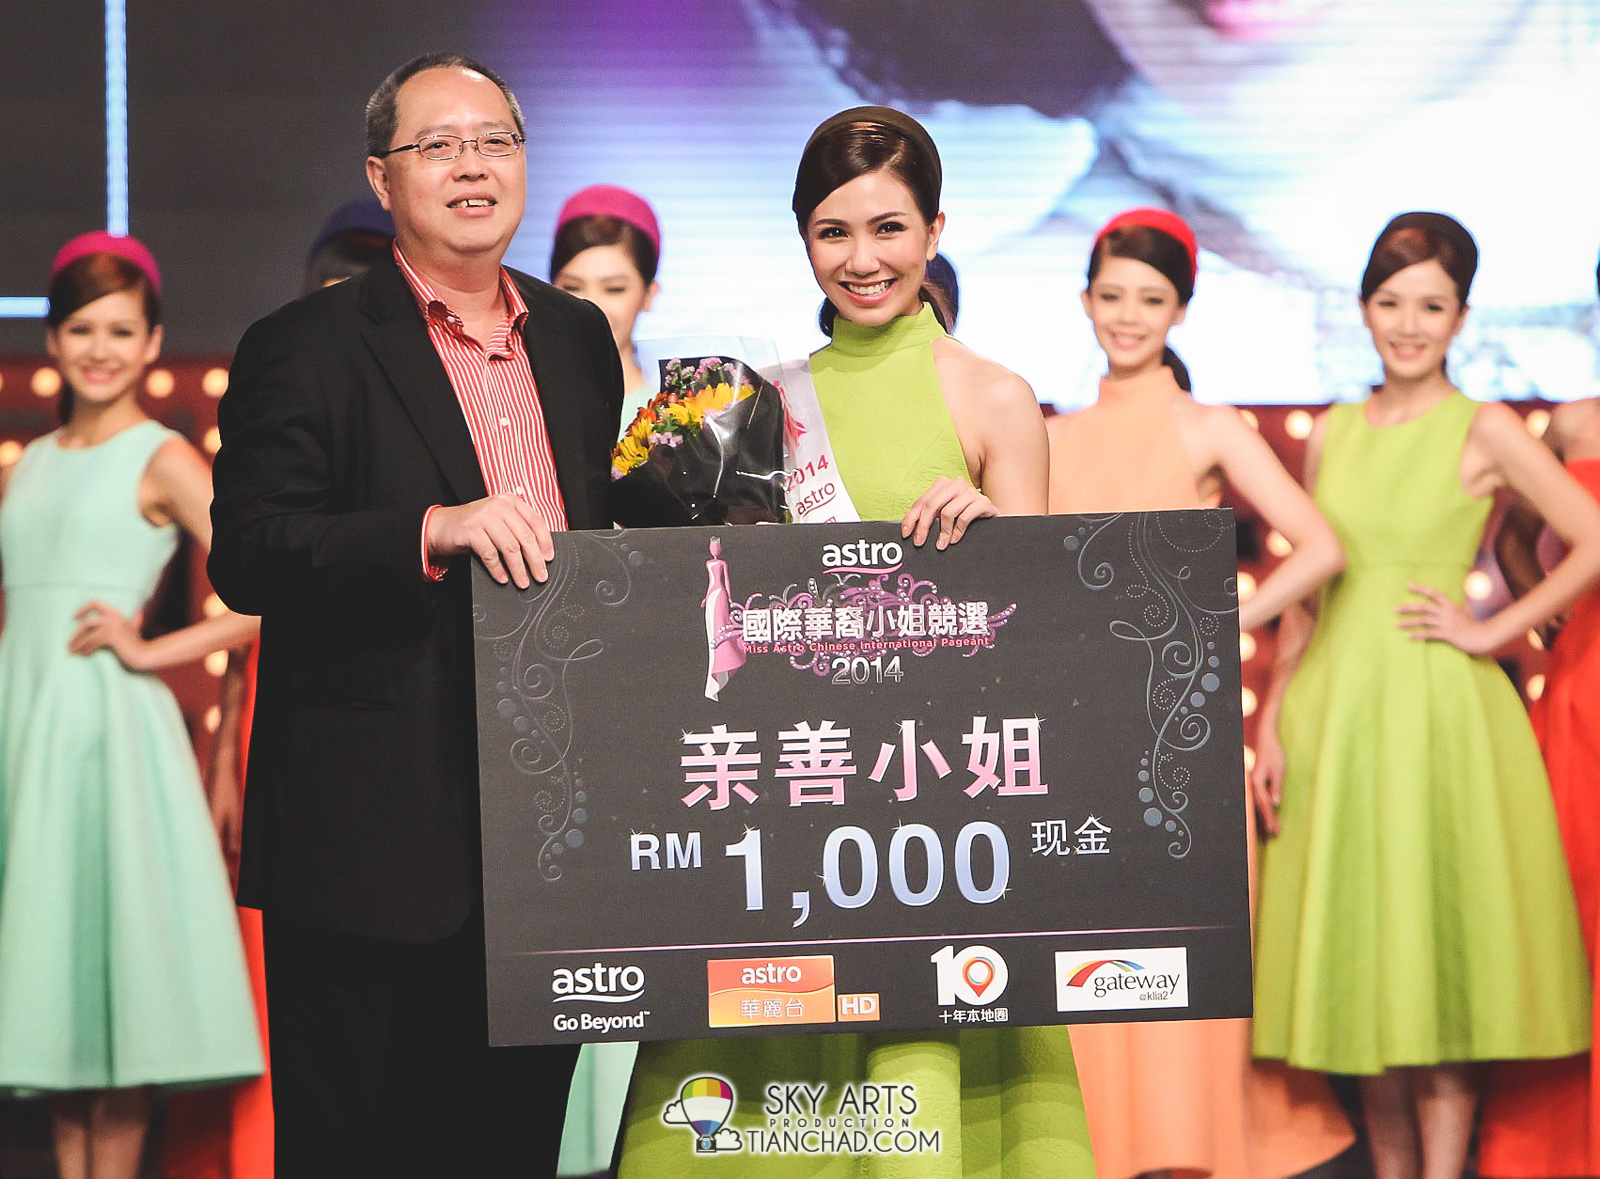 2号佳丽朱婉婷获得众佳丽投选成为《Astro国际华裔小姐竞选2014》亲善小姐